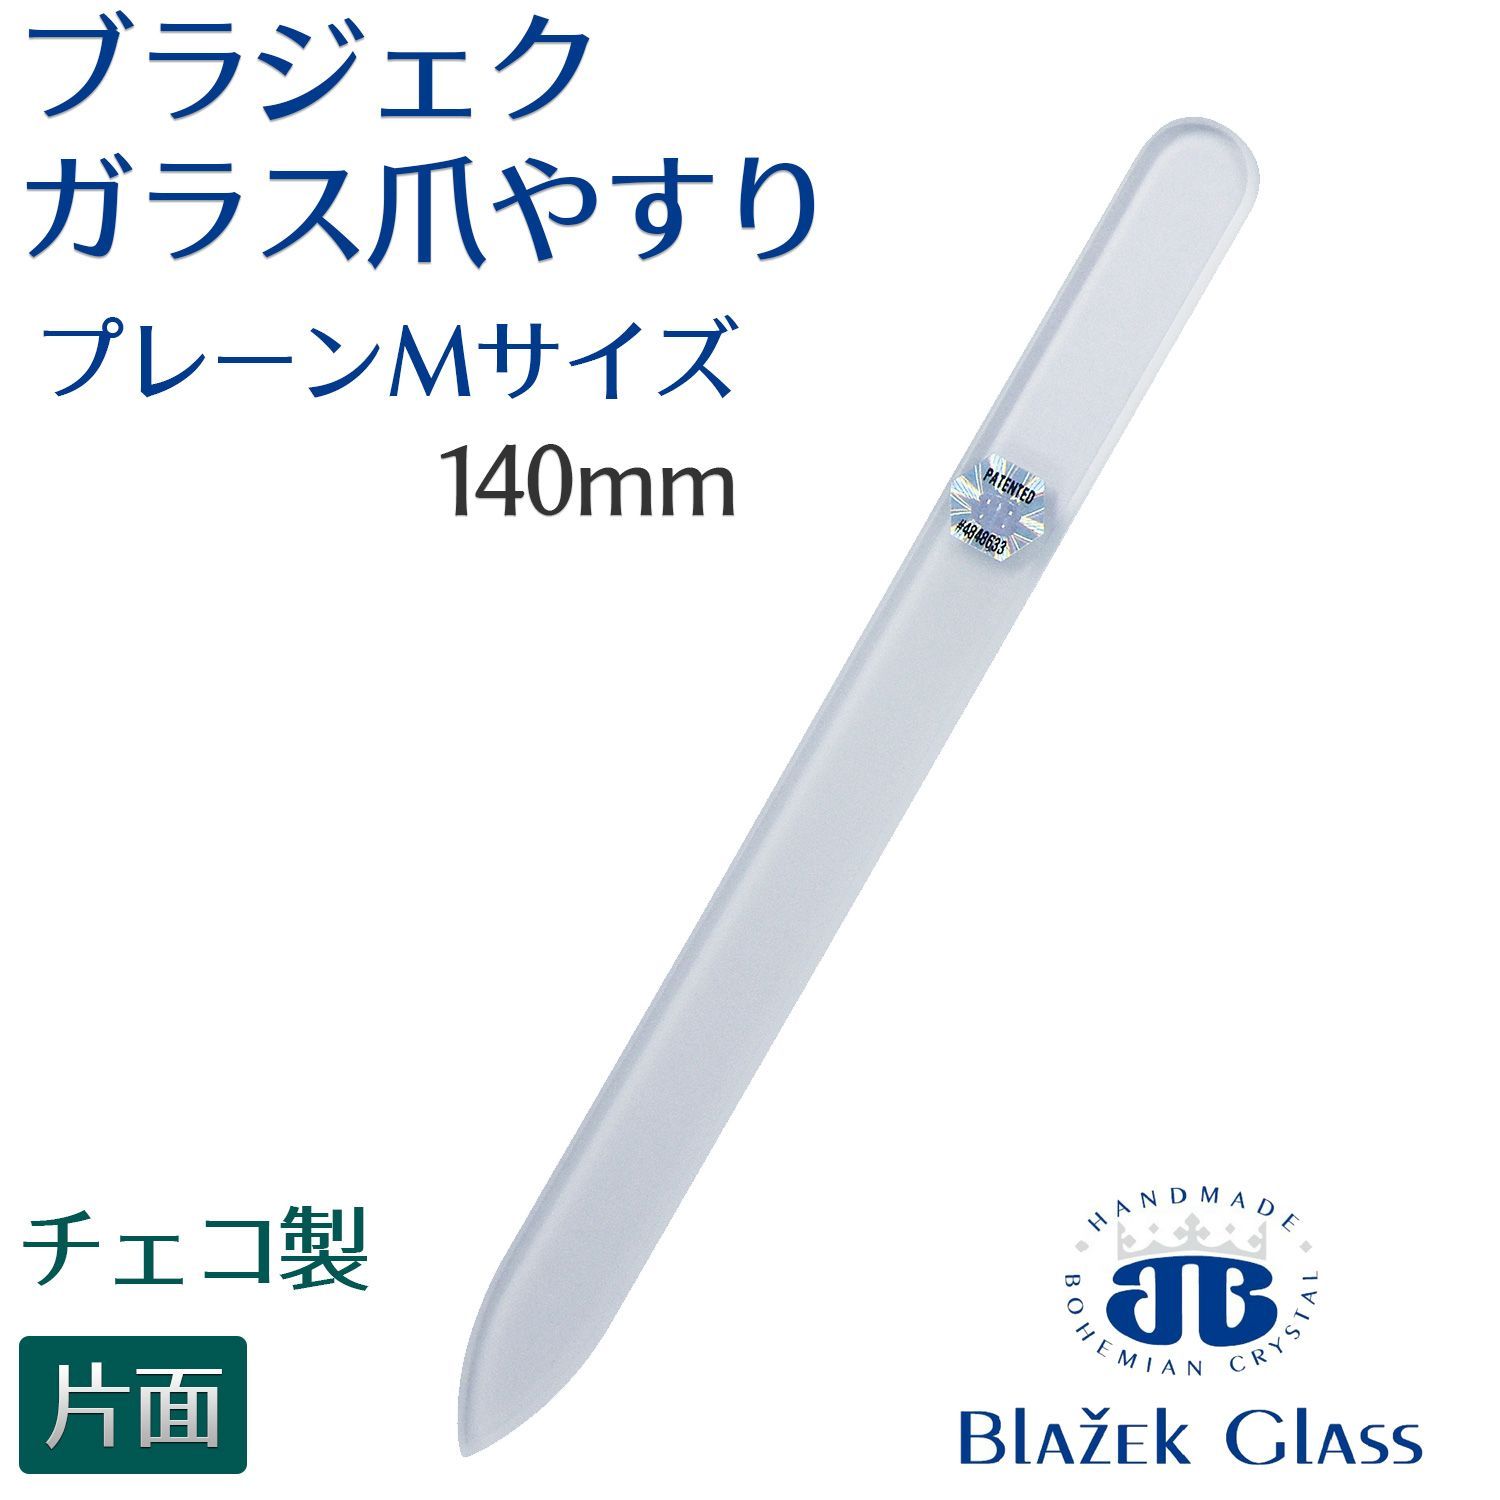 Blazek ブラジェク ガラス爪やすり プレーン 片面タイプ Mサイズ 140mm ネイルケア ソフトカバー付き 爪磨き 送料無料 - ネイル